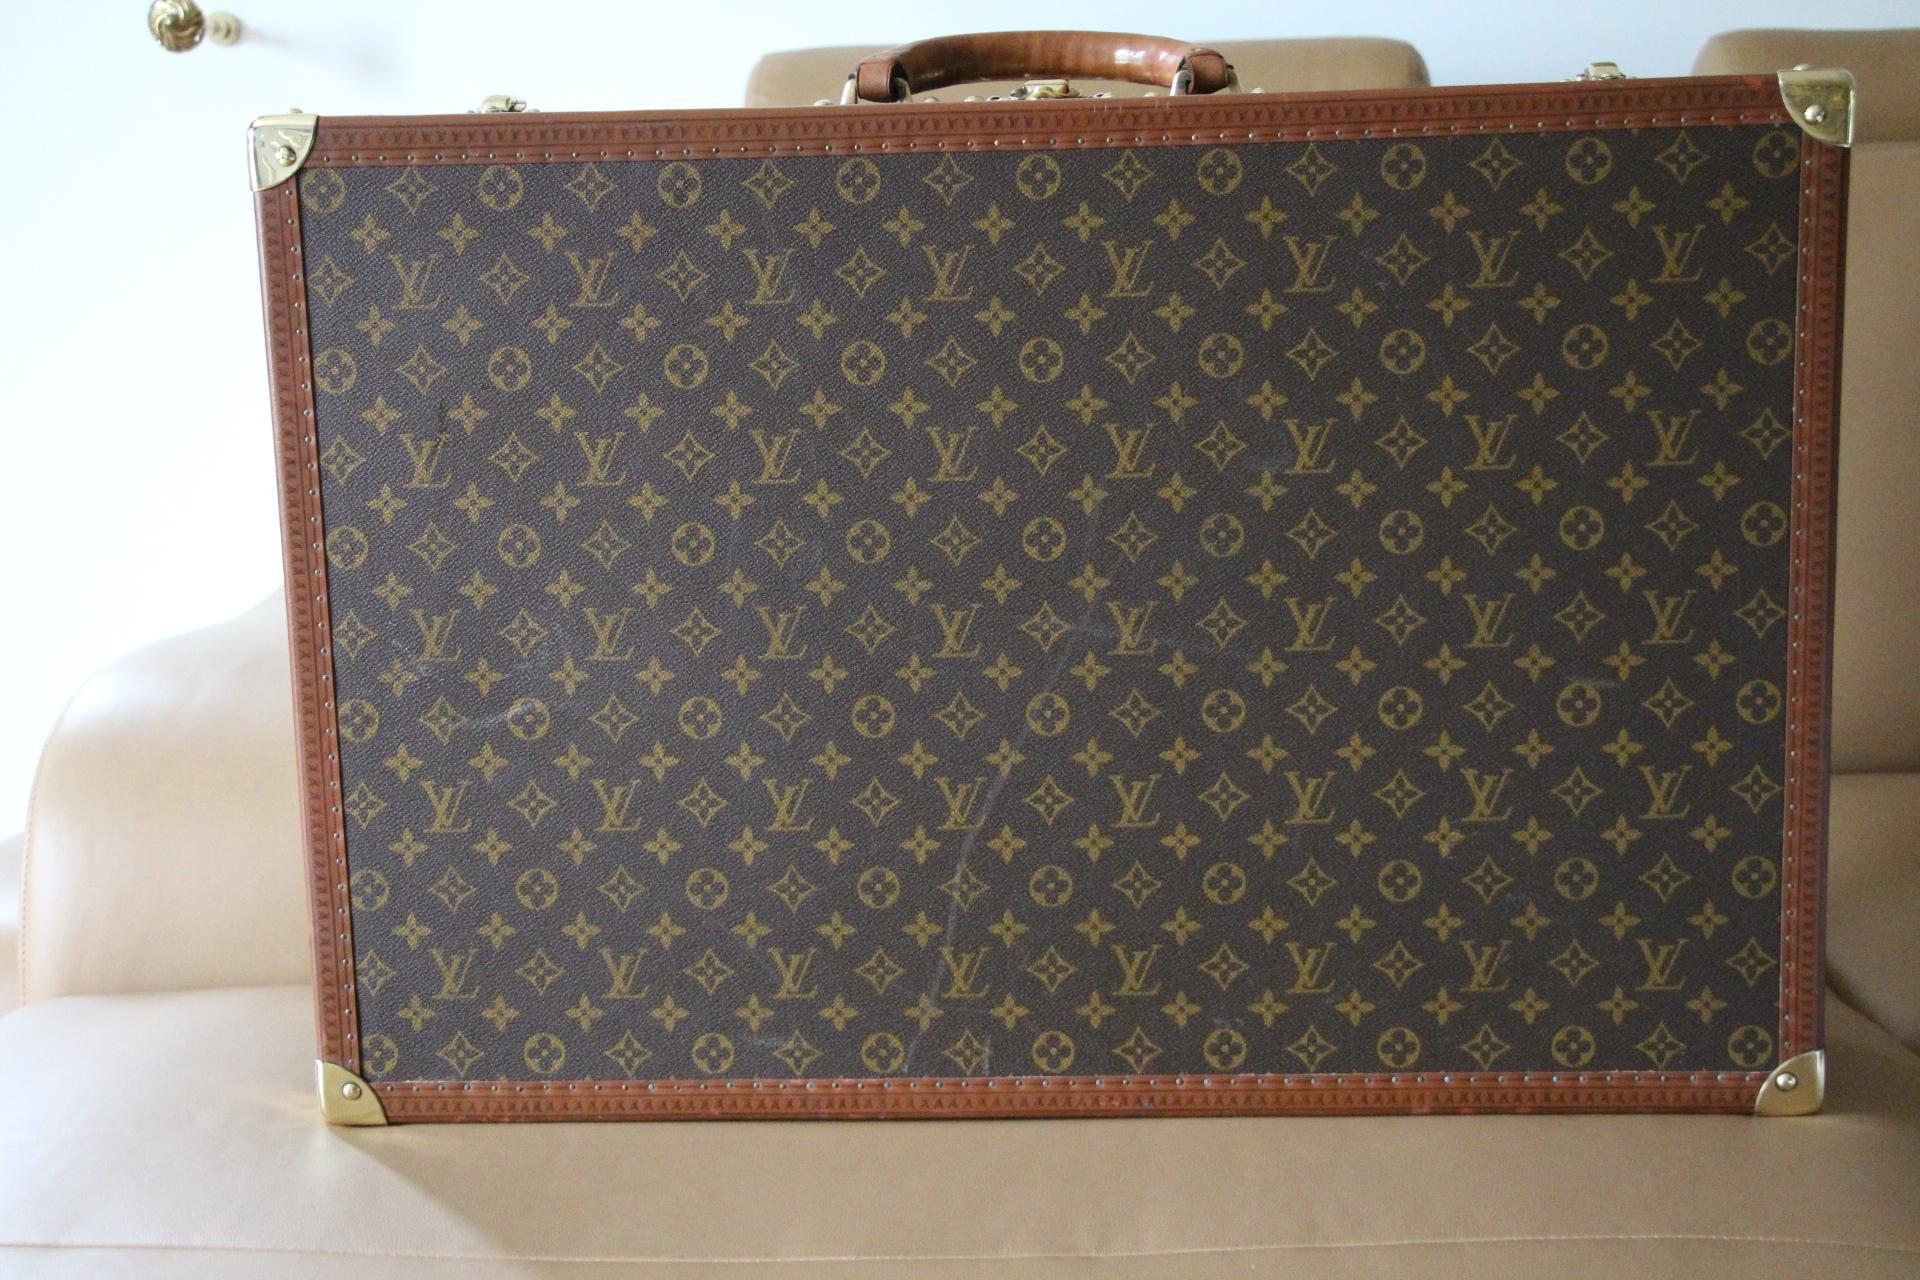  Louis Vuitton Suitcase 70 cm,  Louis Vuitton Trunk For Sale 3